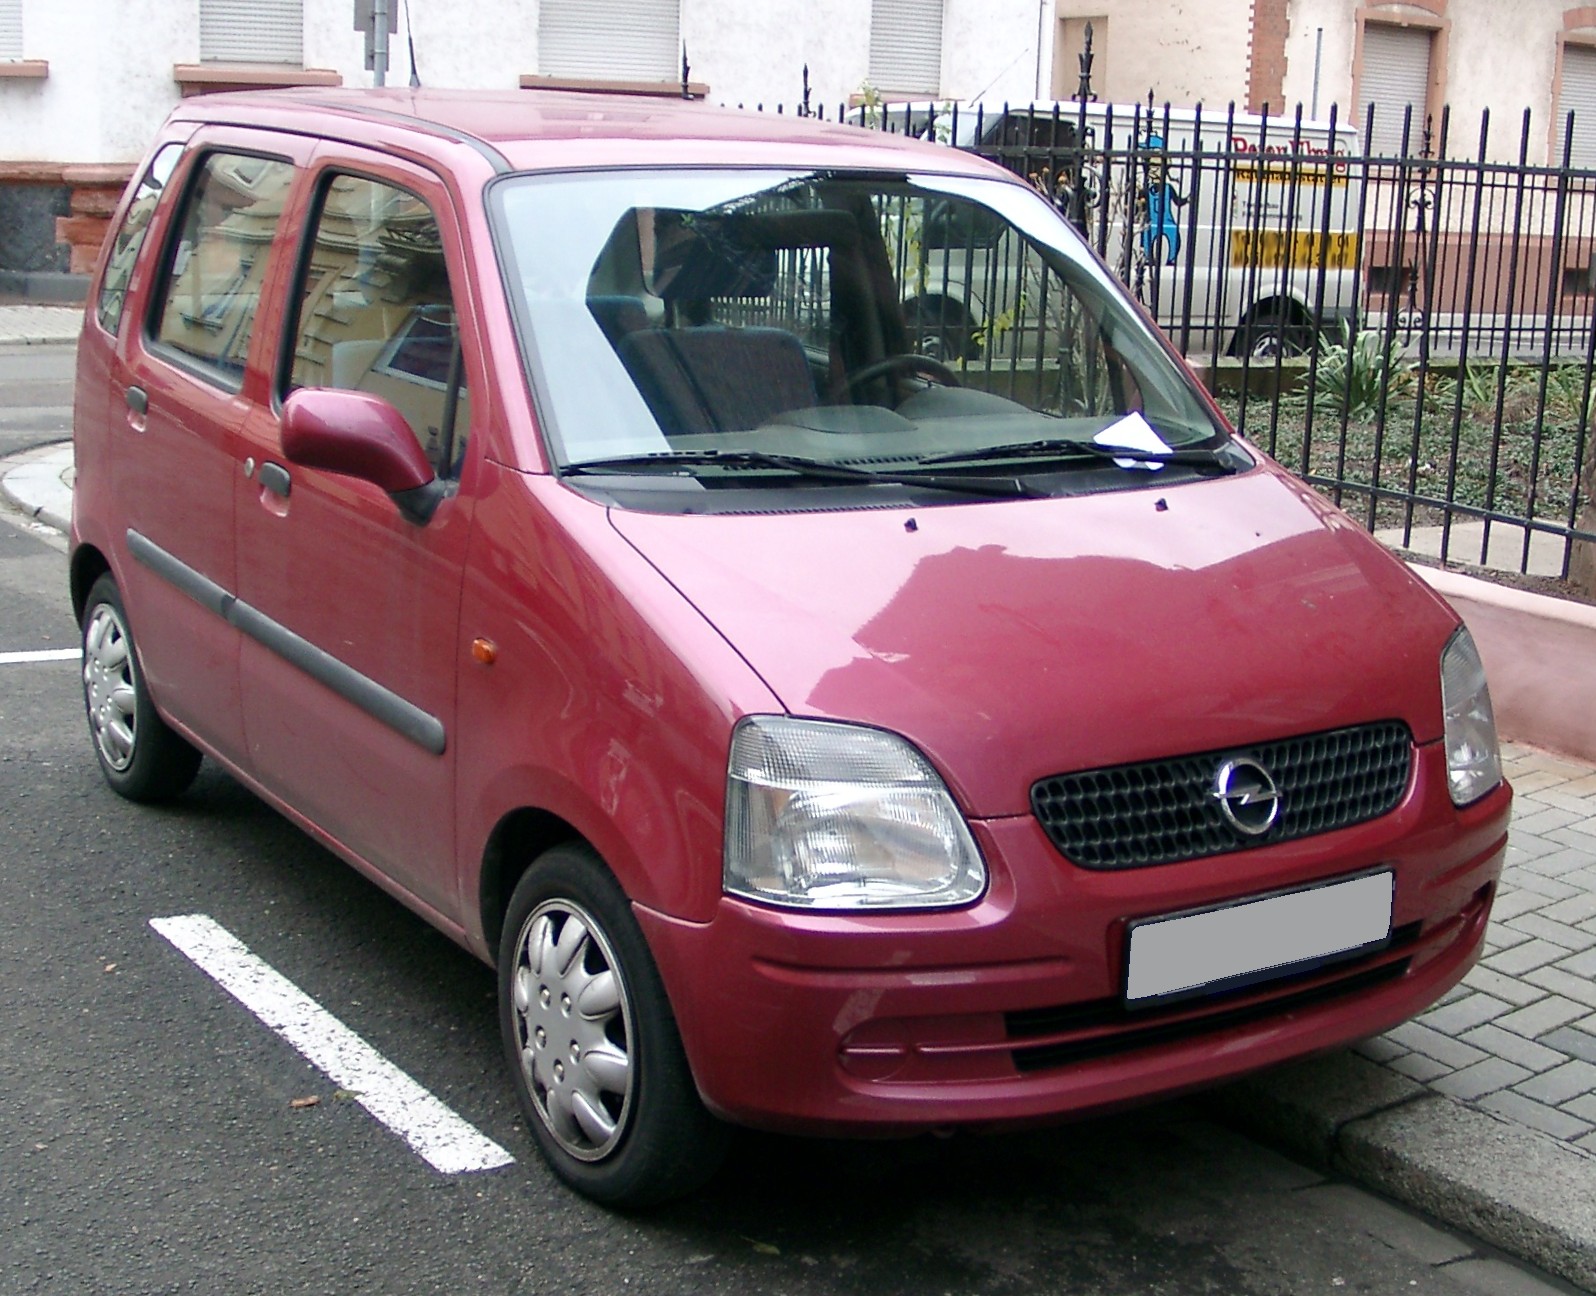 File:Opel Agila front 20071204.jpg